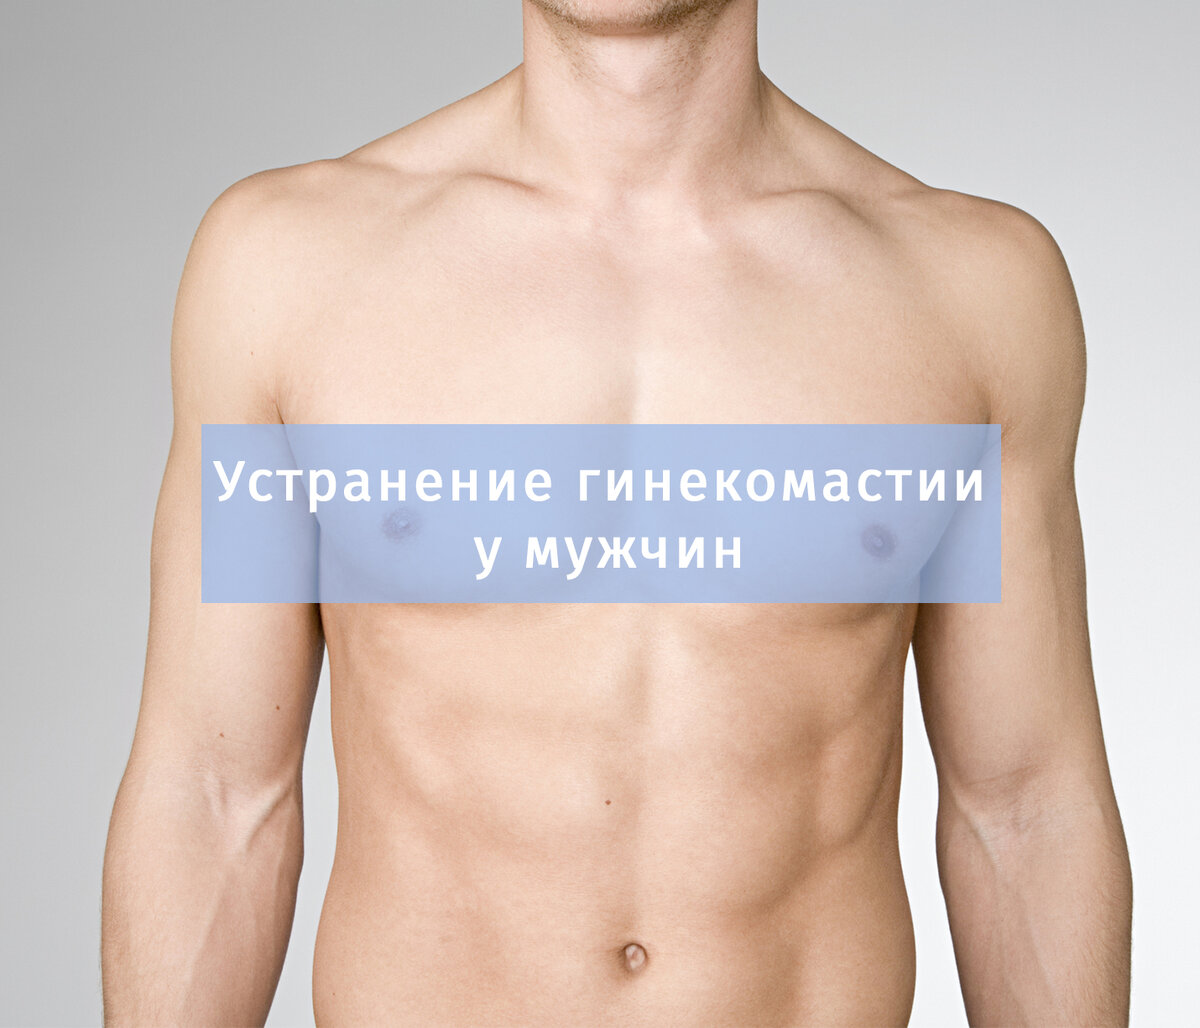 лечения груди у мужчин народными средствами фото 31